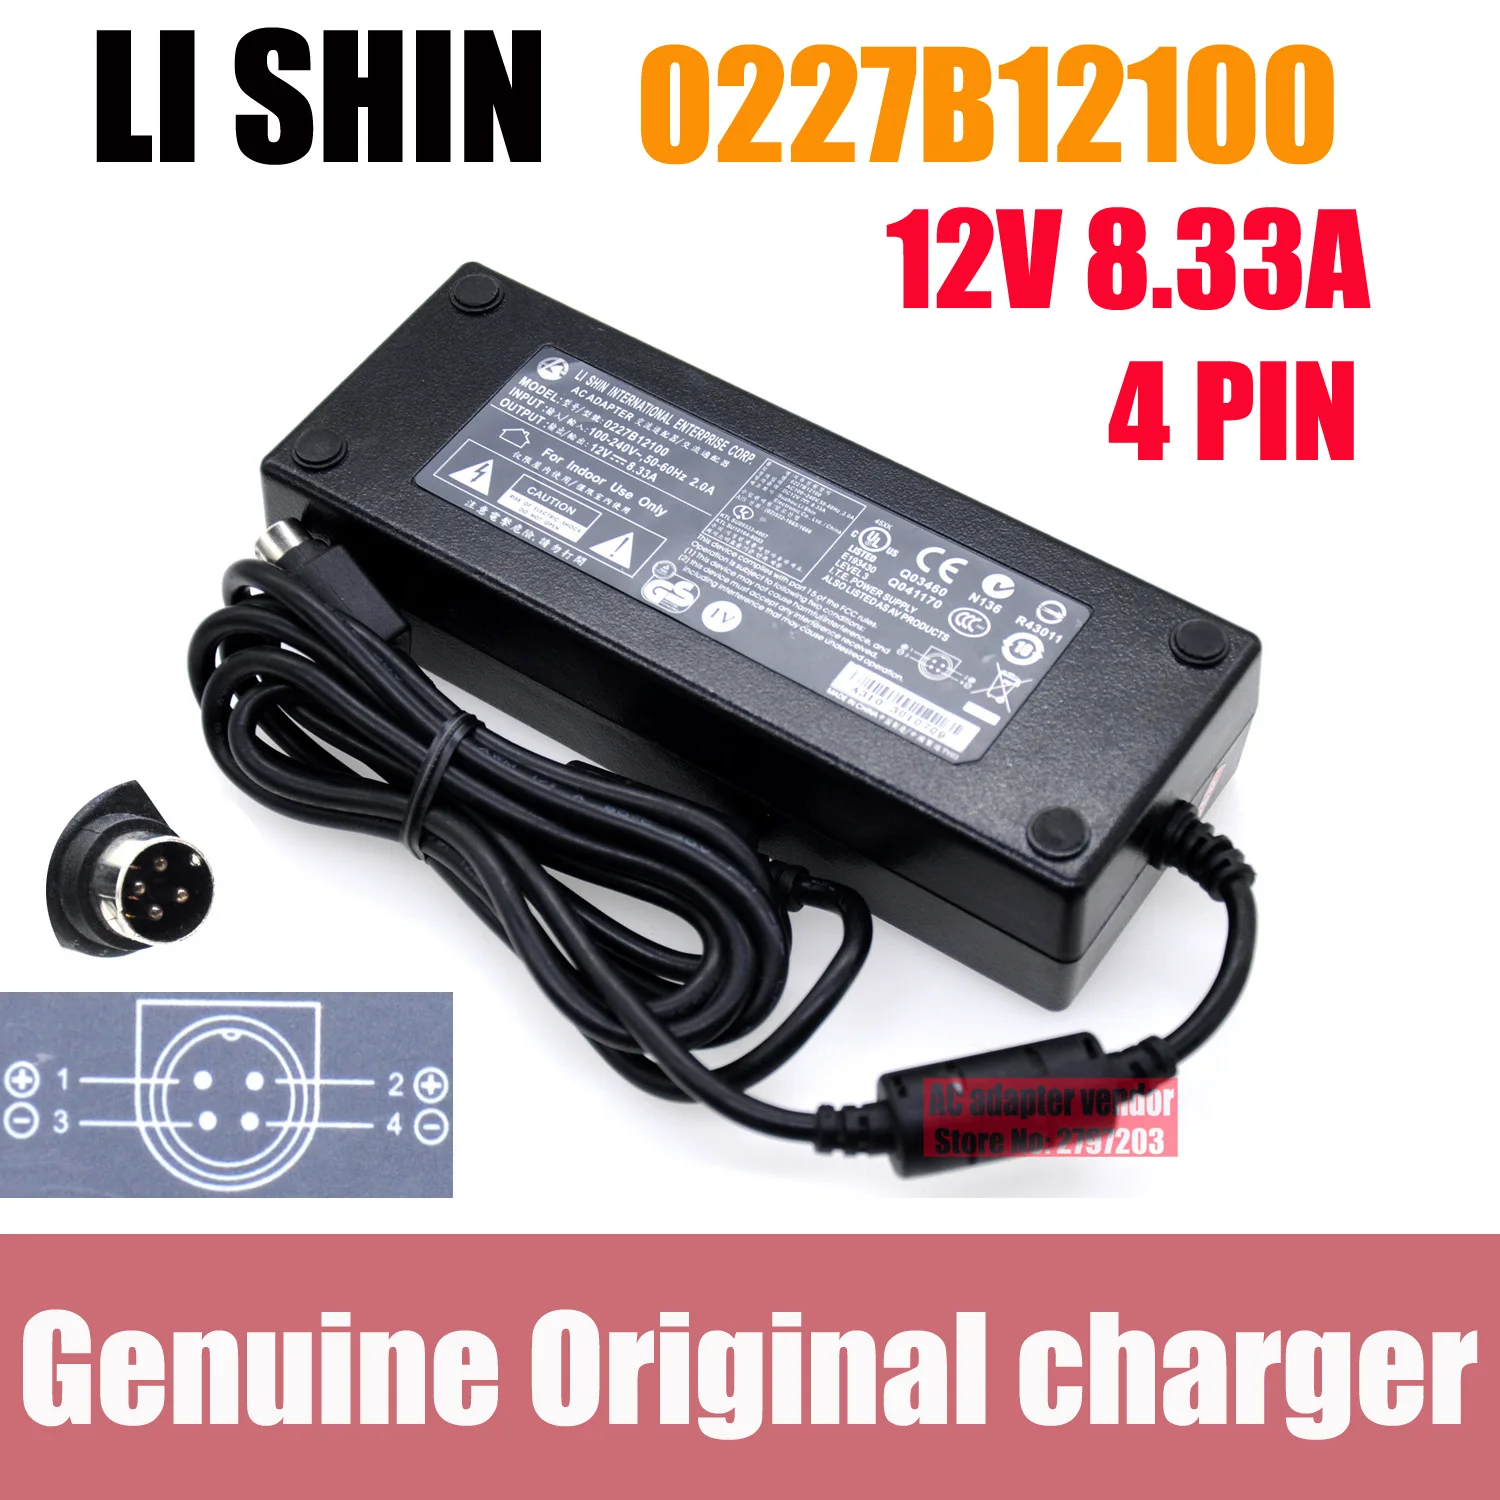 Genuine 0227B12100 12V 8.33A Li Shin Power Supply Charger EA11001E 0415B20180 For nas qnap TS-419P II NAS delta EA11003E adapter